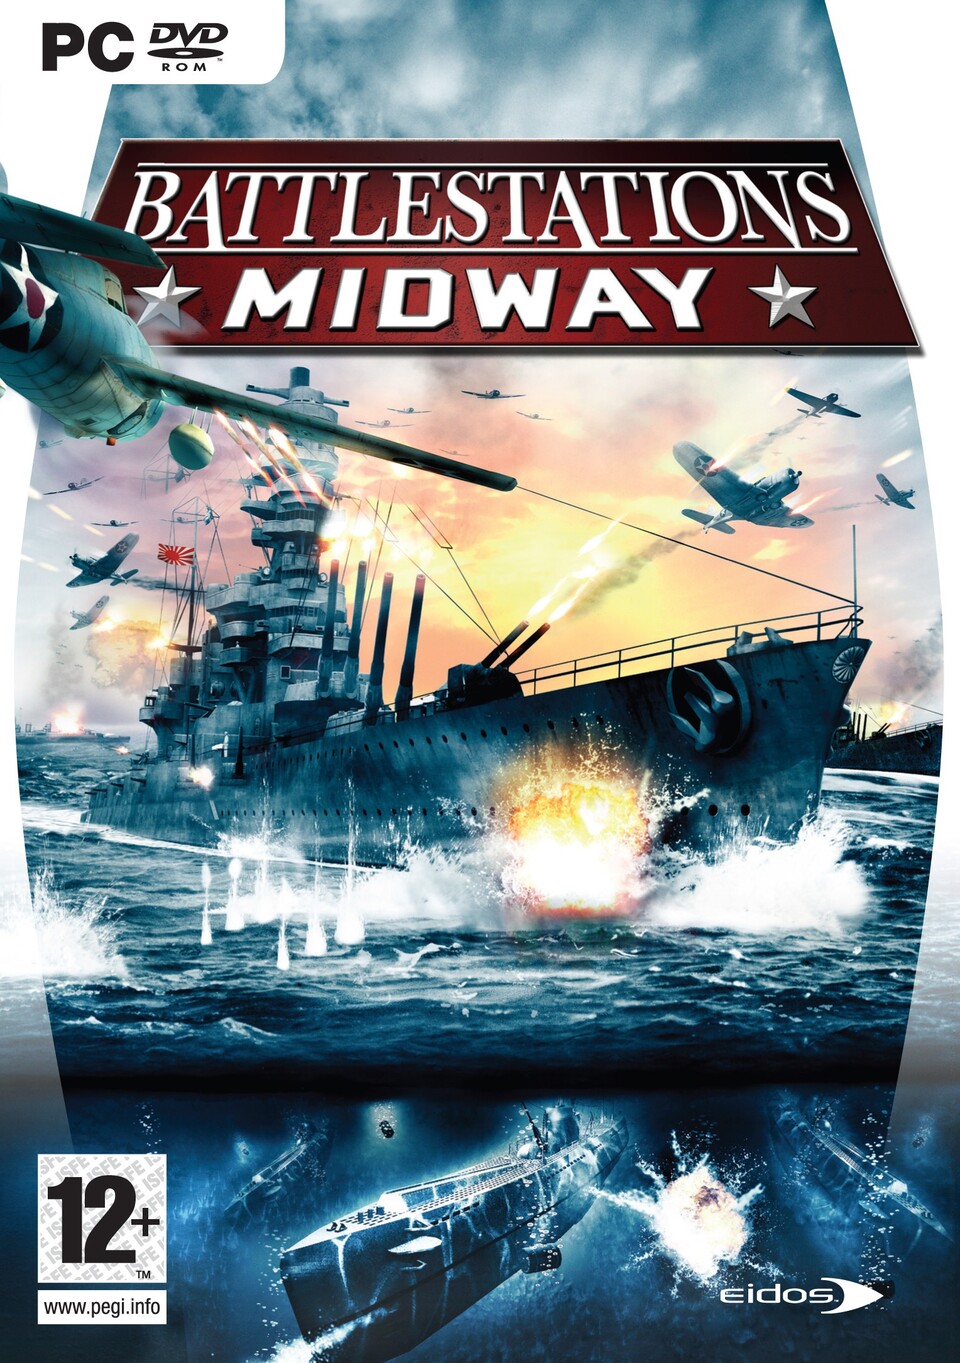 Unter der Ägide von EIDOS musste Mithis sein Strategiespiel übrigens zum Action-Strategie-Hybriden 'Battlestations Midway' umarbeiten.